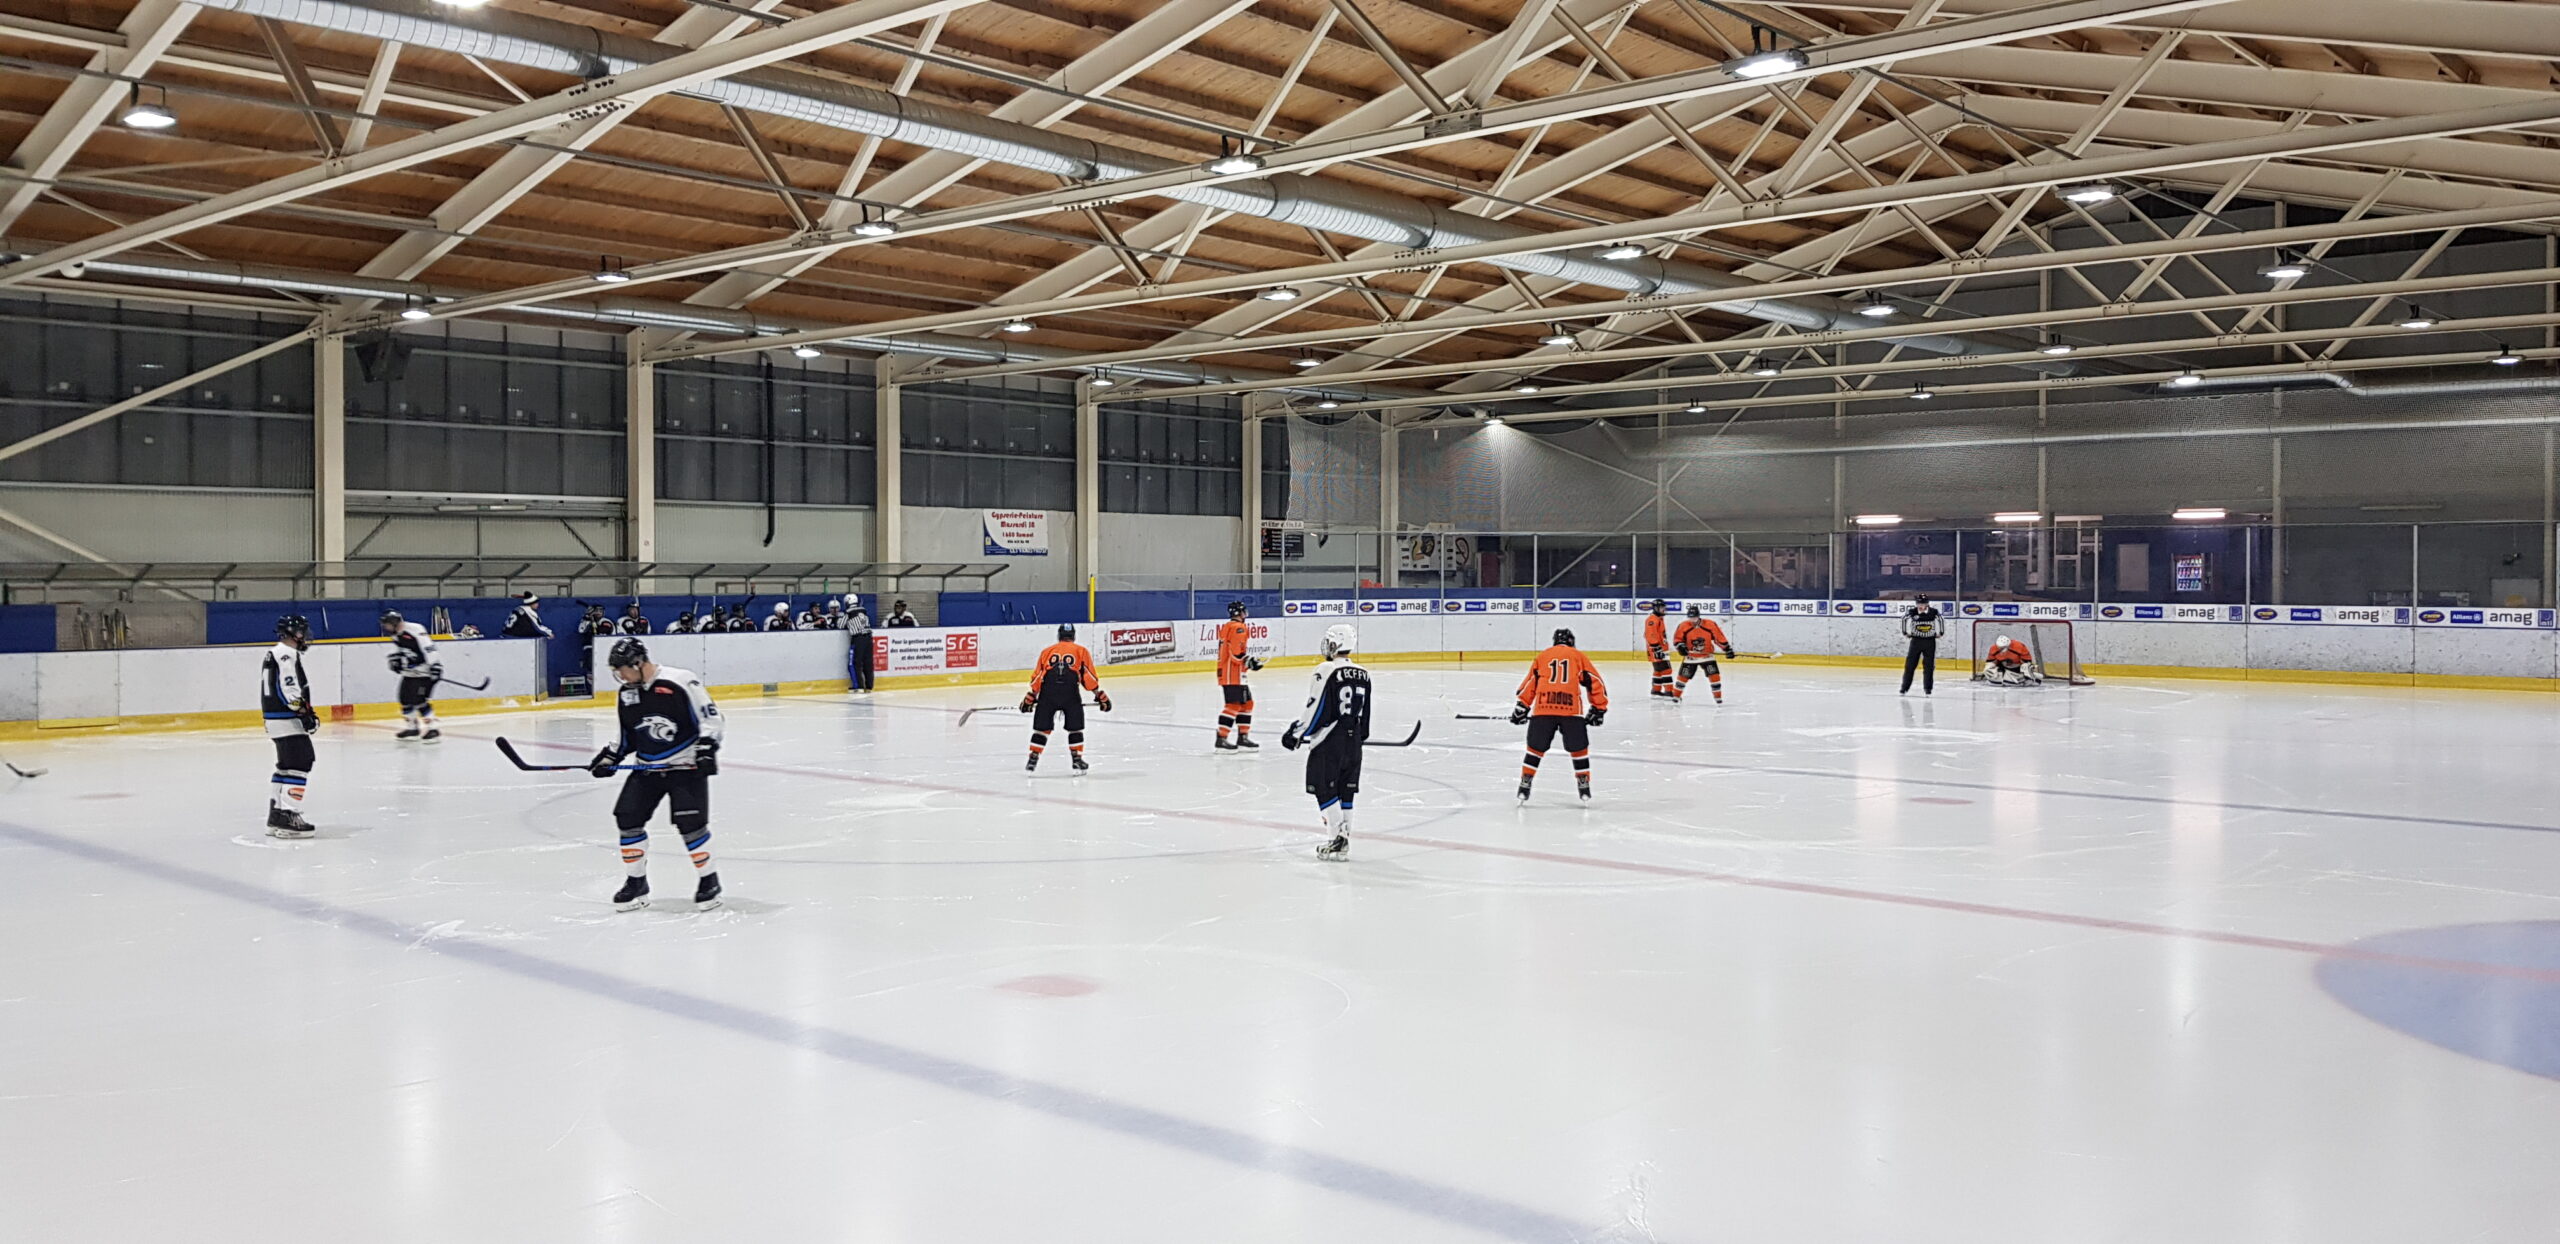 Profitez de la patinoire régionale de la Glâne!
D'octobre à mars, la patinoire de la Glâne vous propose une activité à l'abri. Patineurs amateurs ou hockeyeurs en herbe sont les bienvenus sur la surface de 60mx30m. Un tiers de la glace est consacré au "hockey public" durant les horaires indiqués !